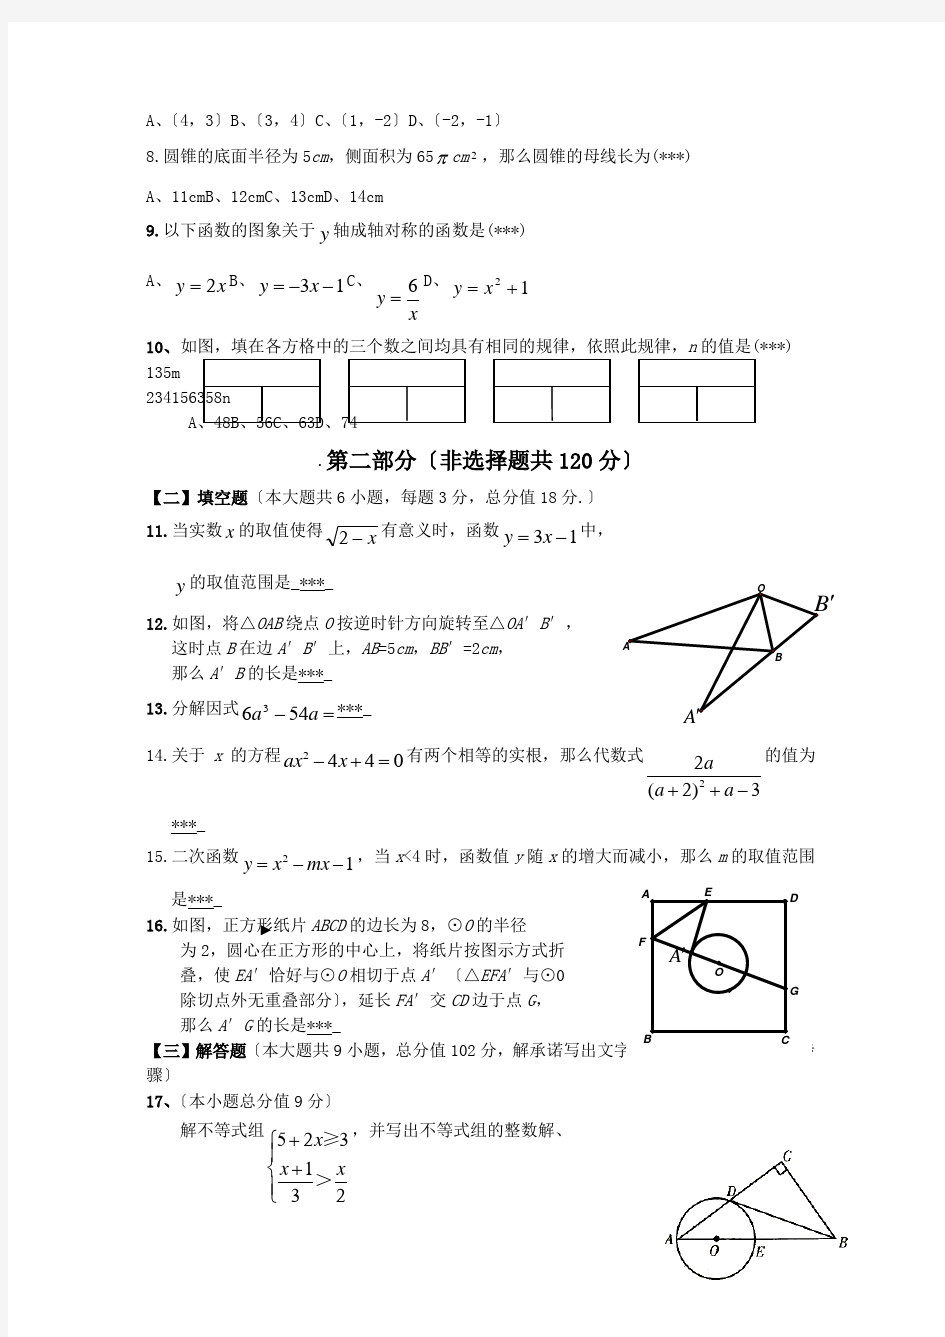 广州广雅中学2019中考重点试卷(一)-数学